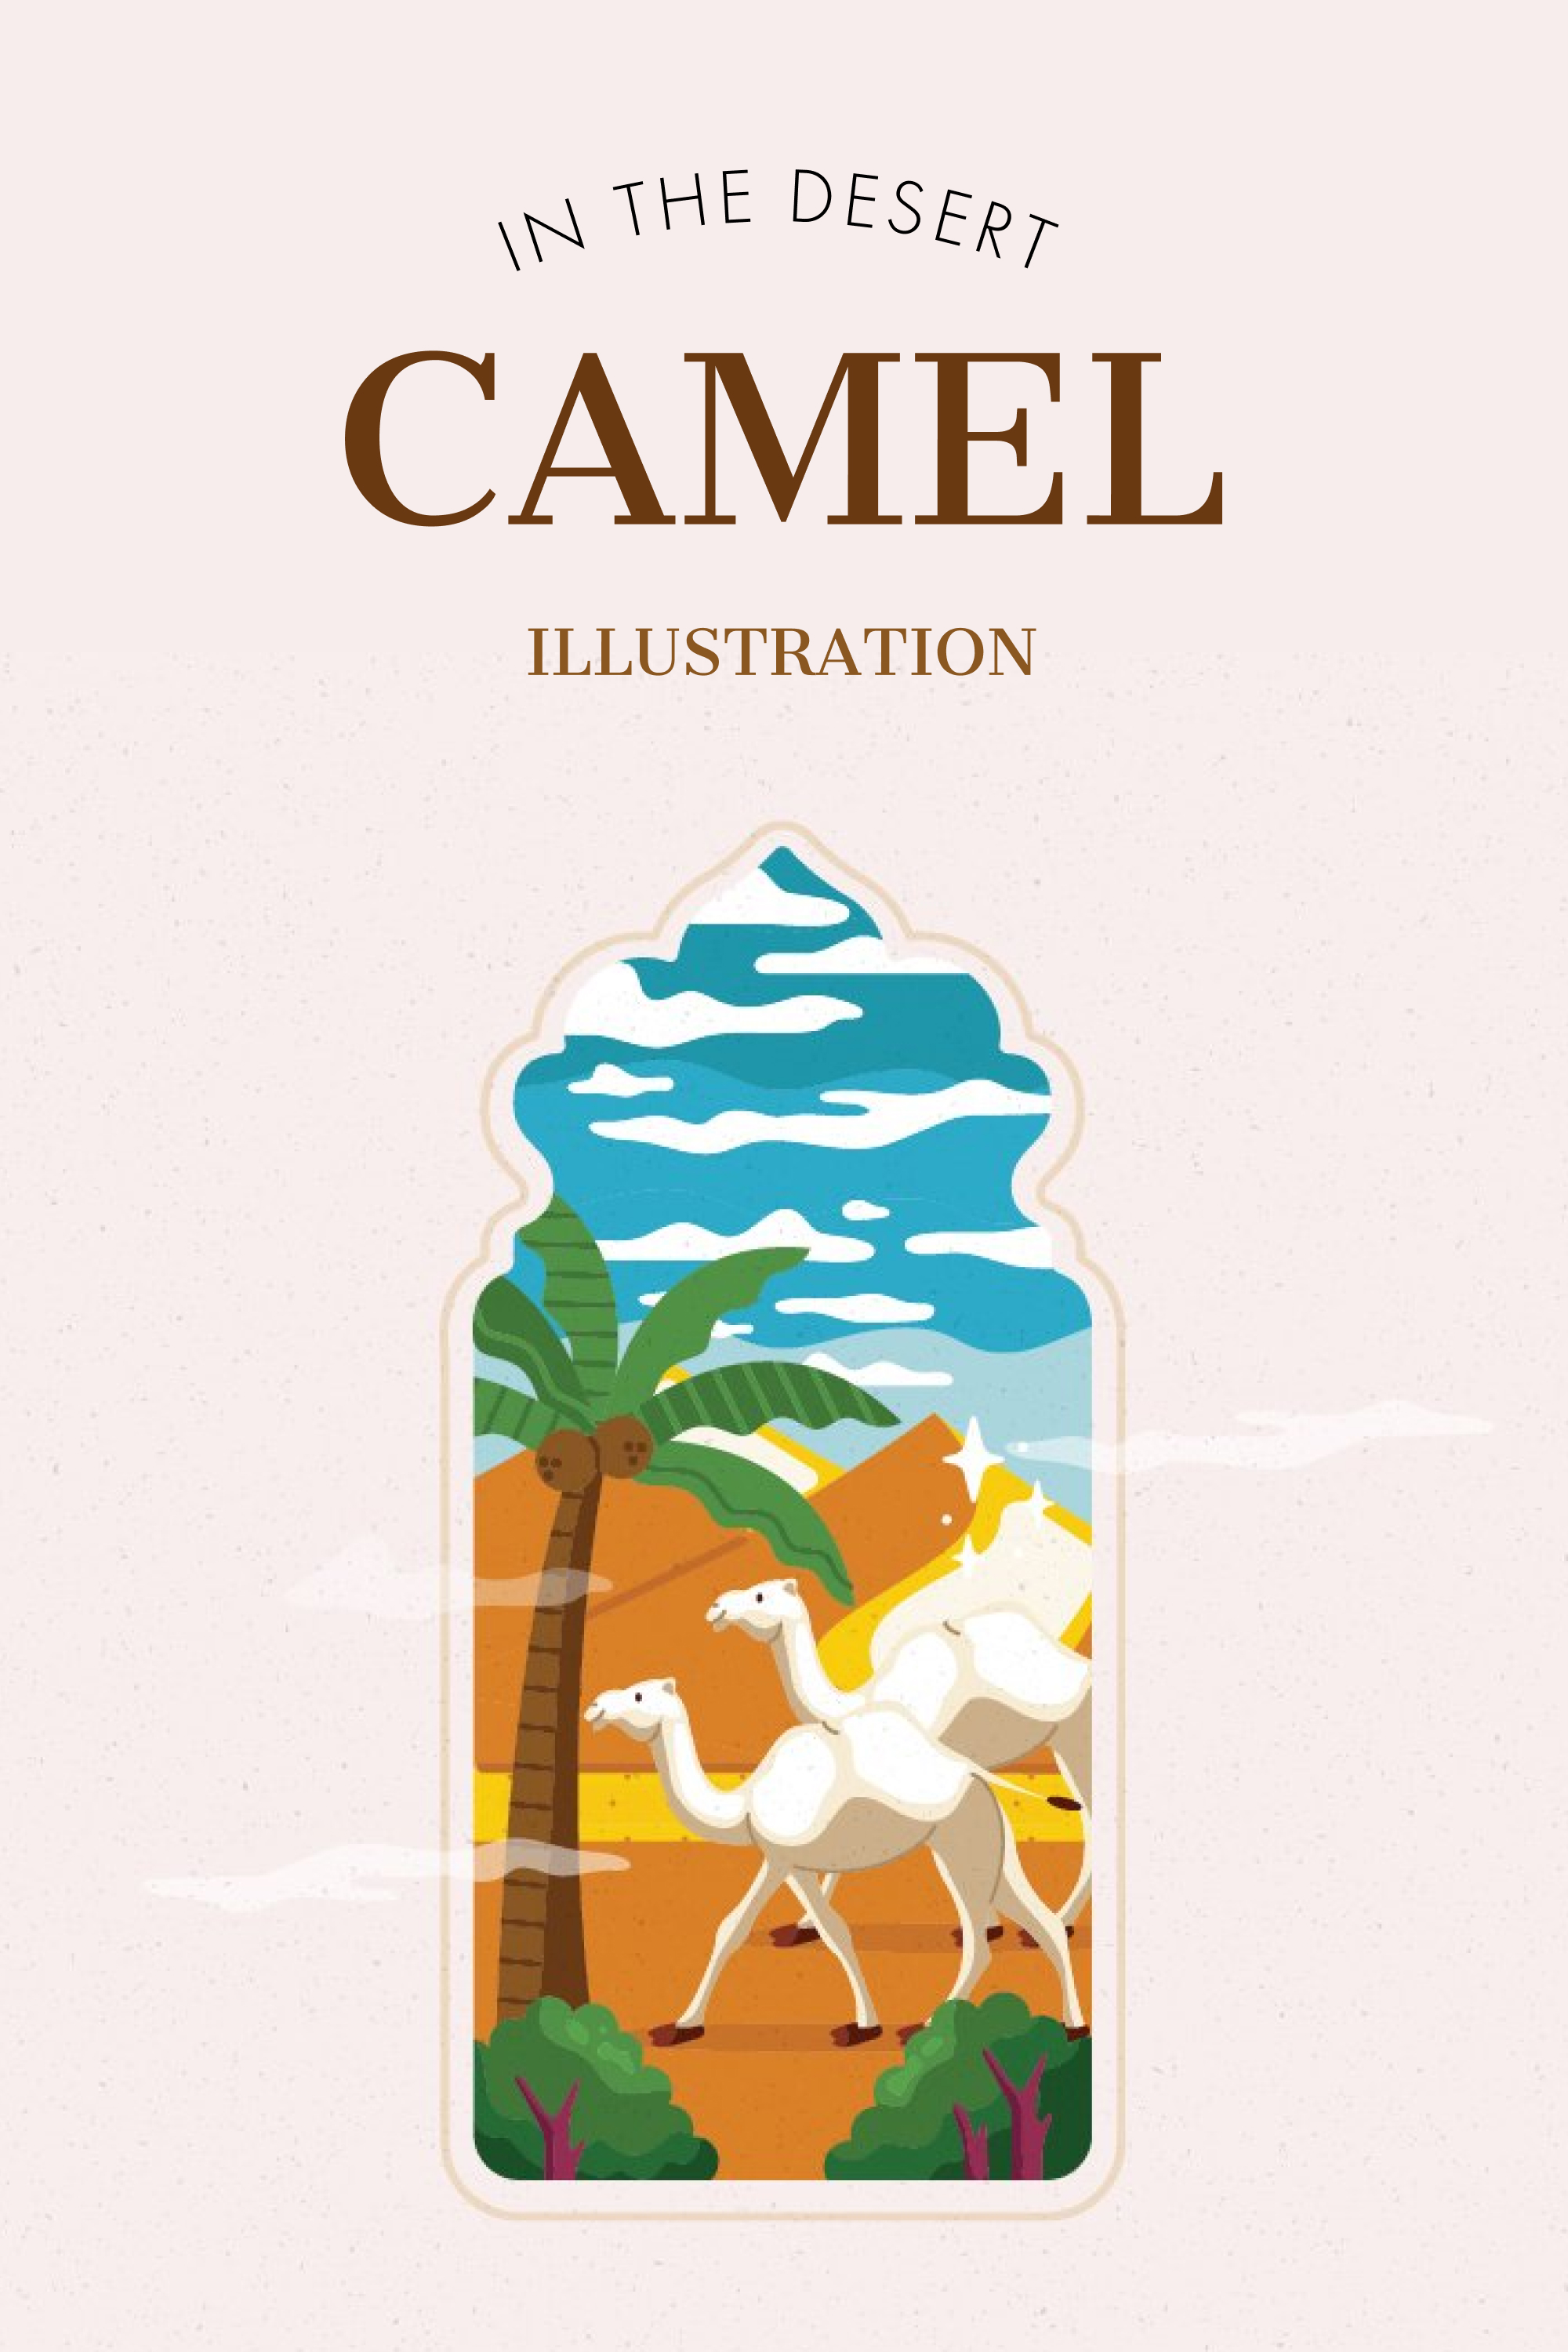 Camel in the desert illustration of pinterest.